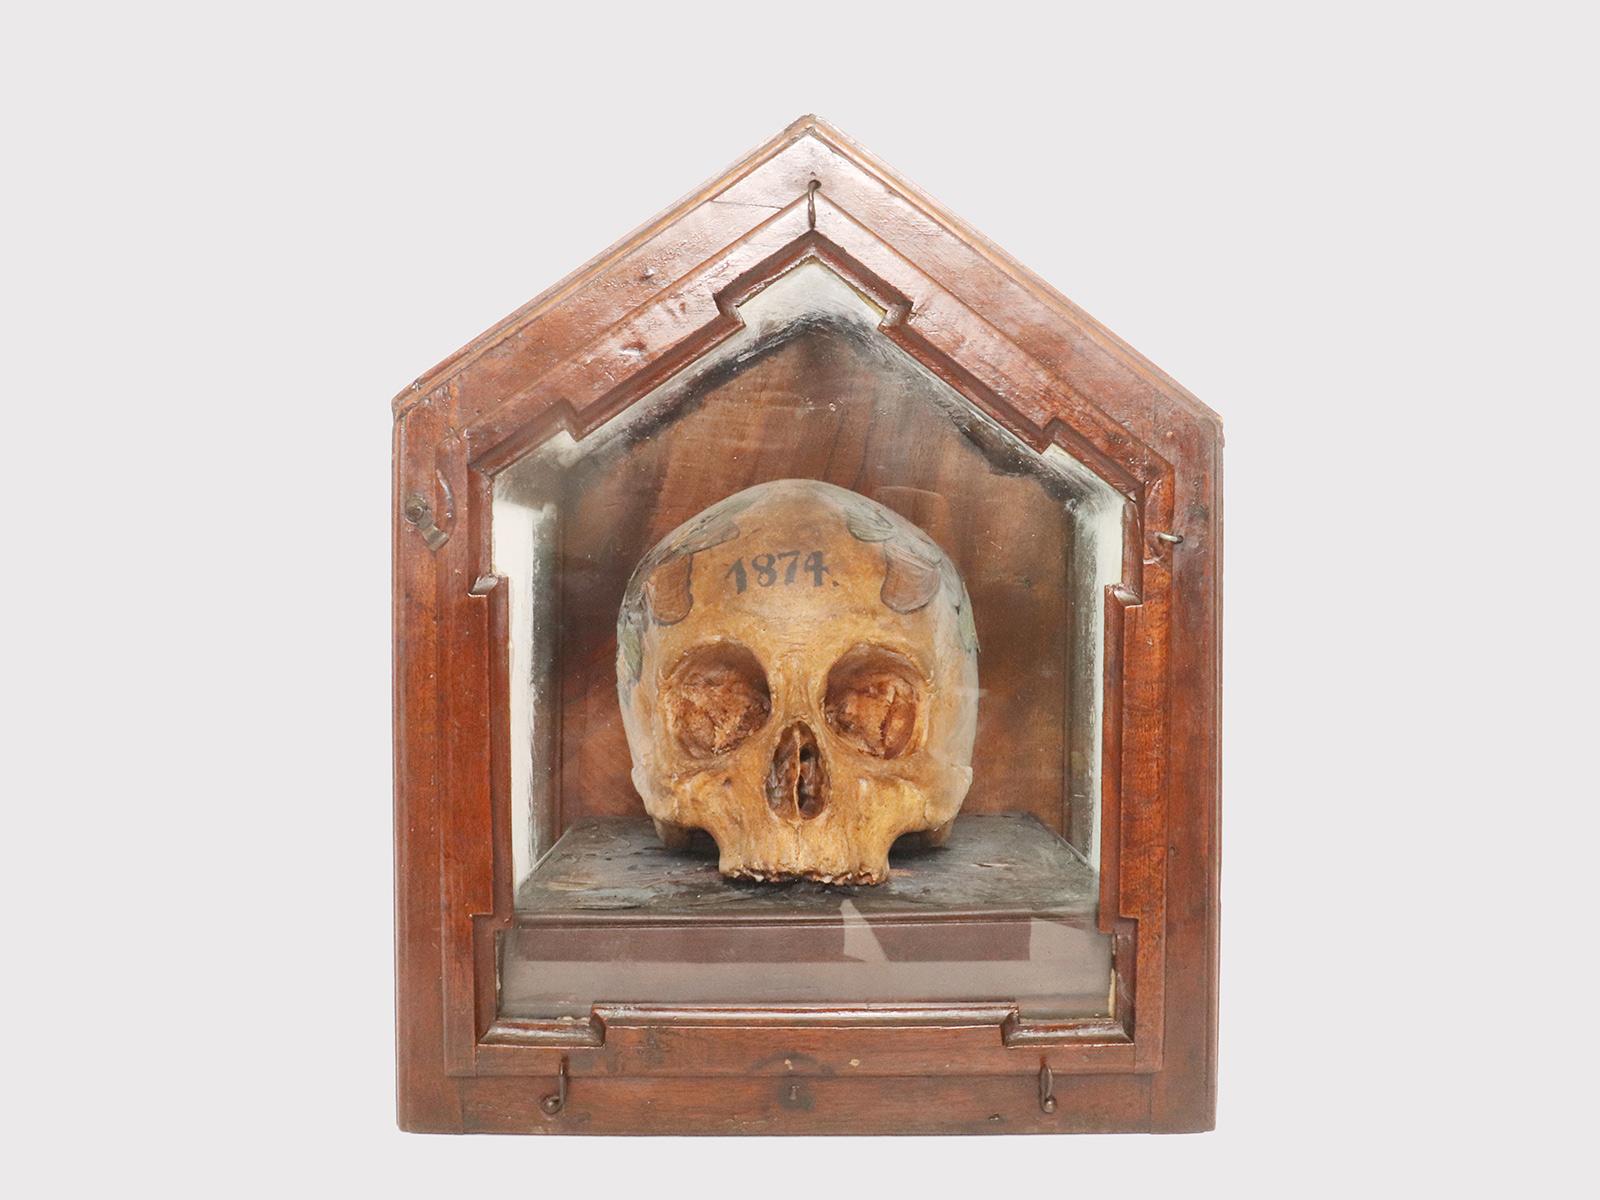 Ein Memento Mori aus der Wunderkammer, das einen Schädel darstellt, dessen Gipsabdruck mit Schmetterlingsflügeln bedeckt ist, die auf dem kronenförmigen Schädel und dem mosaikartigen Holzsockel angebracht sind. Auf der Stirn des Totenkopfes ist die